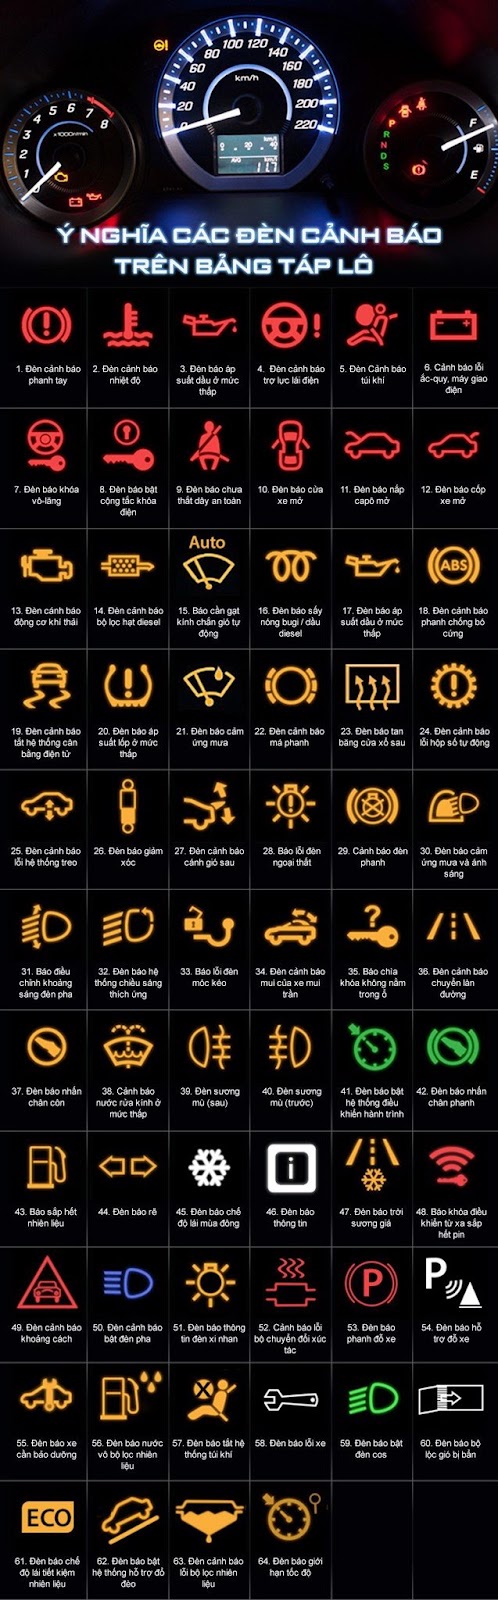 Các loại đèn lưu ý bên trên táp-lô xe hơi thông thường gặp
